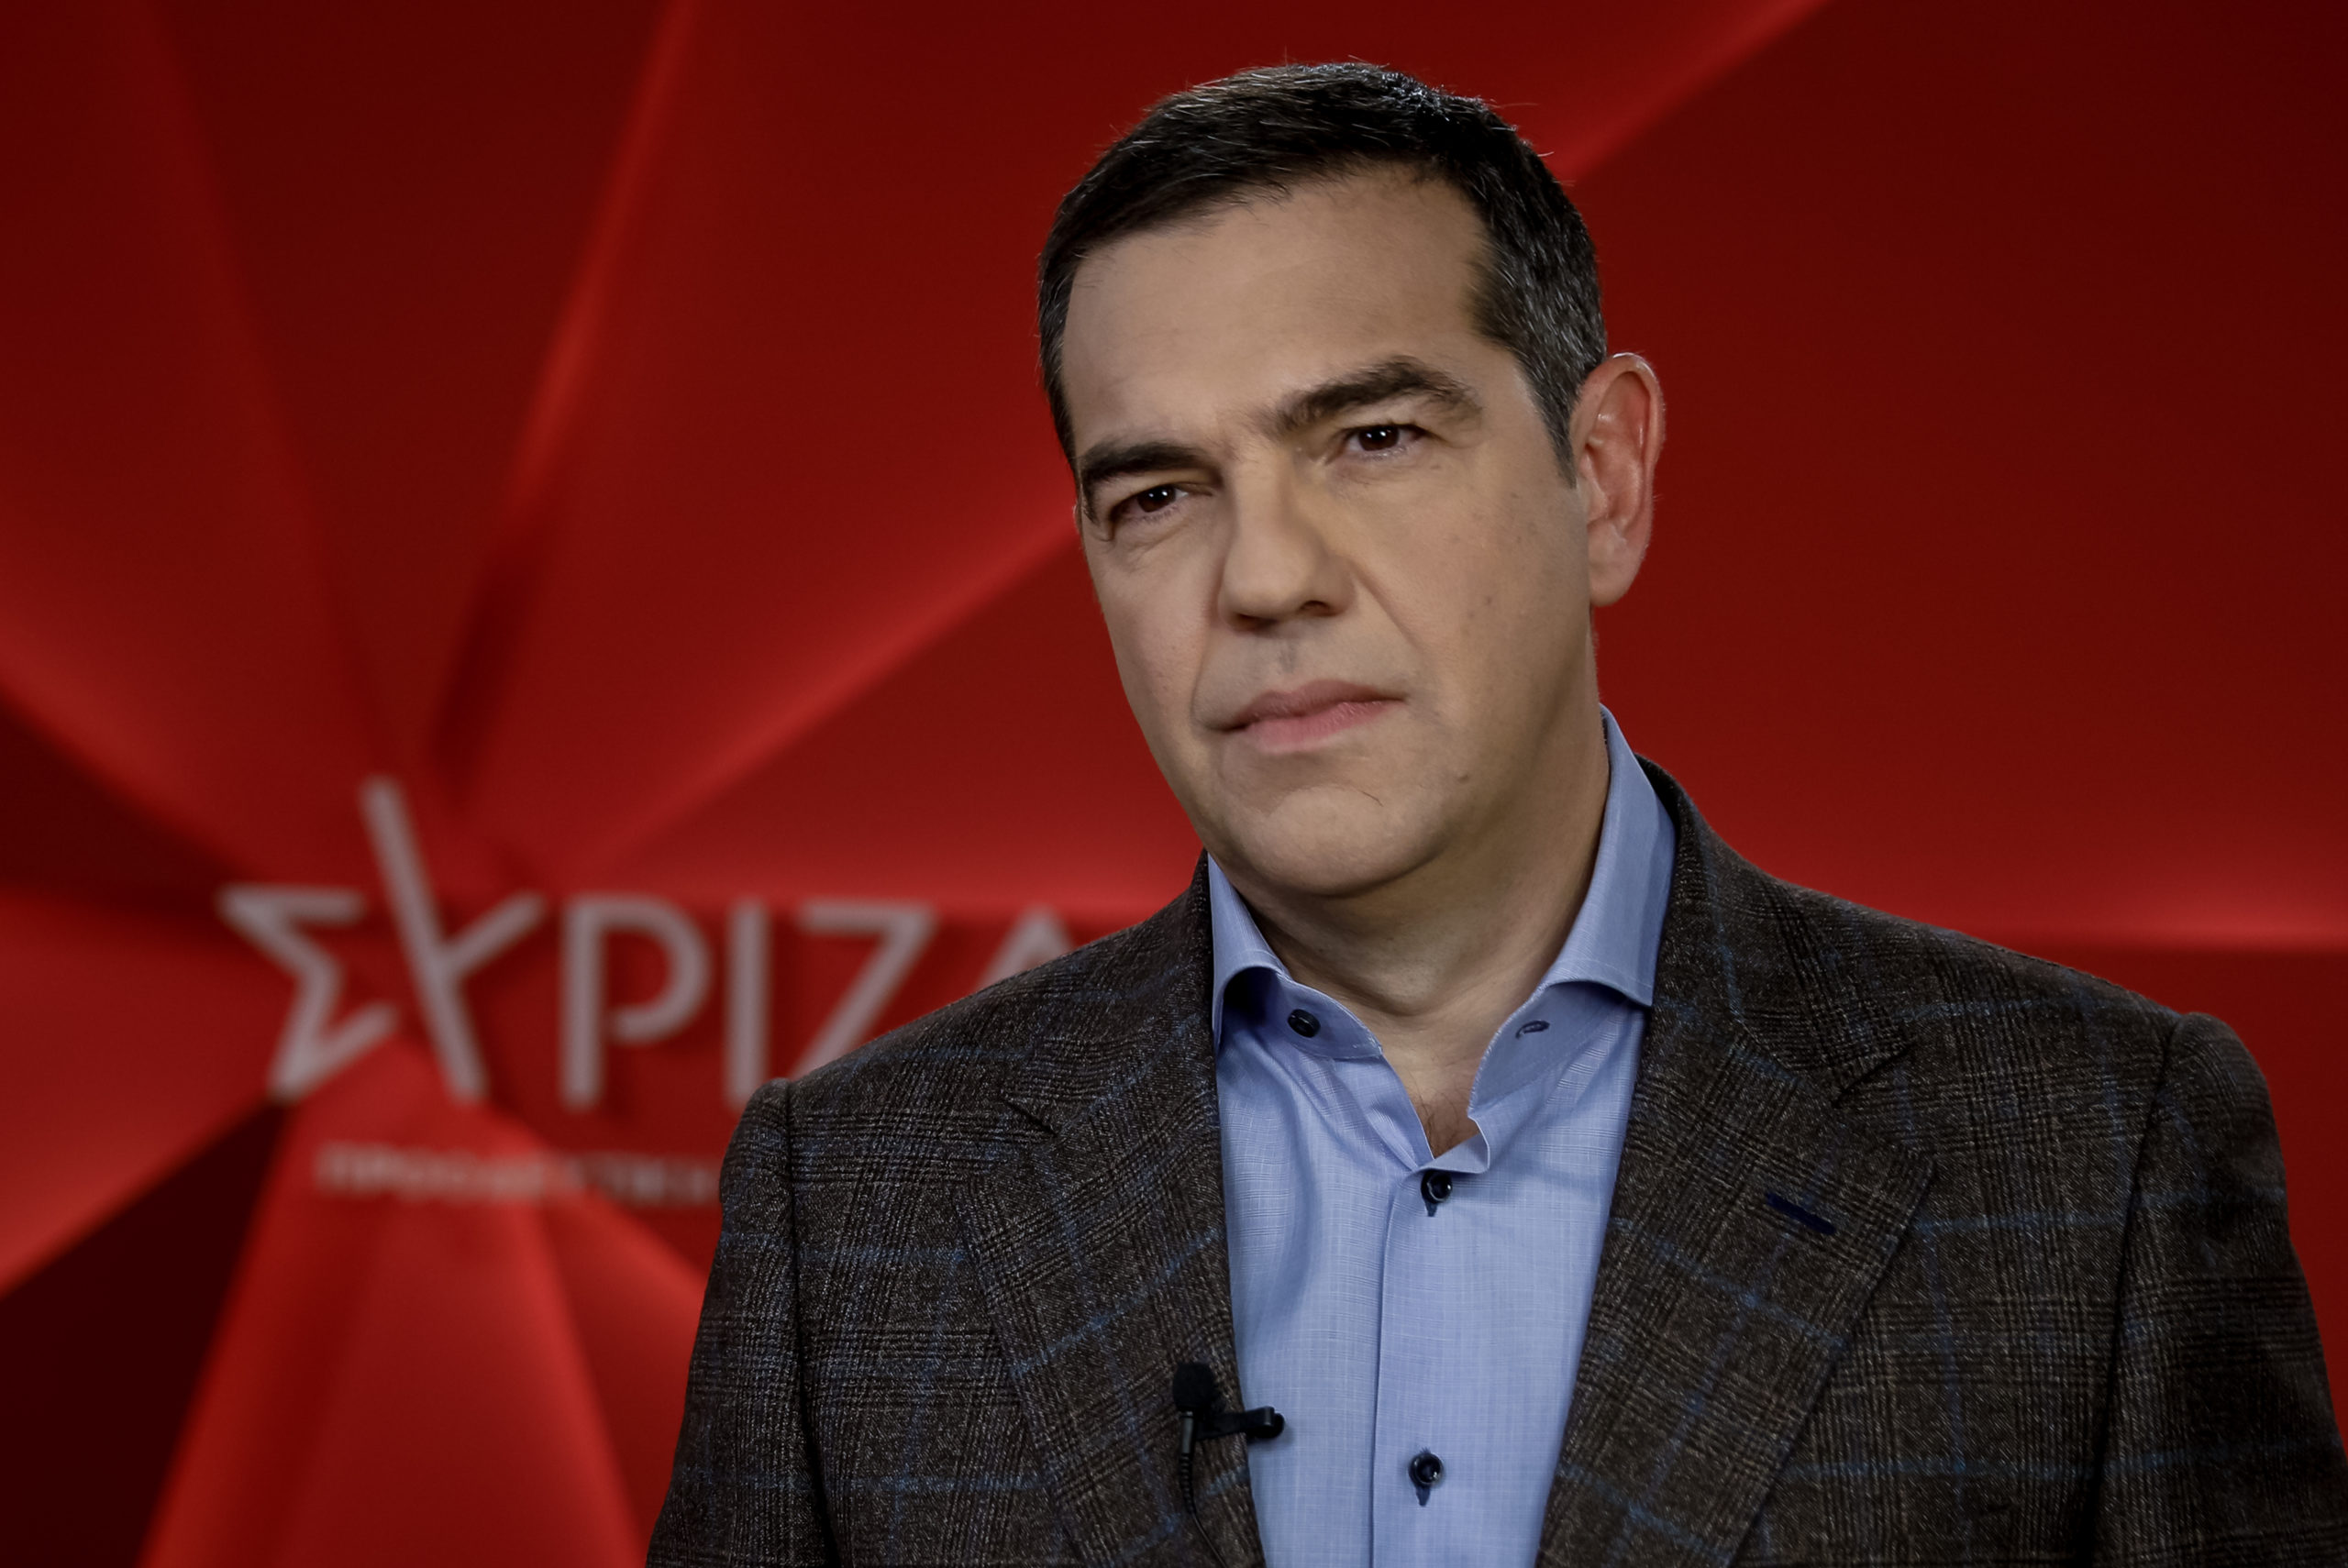 Α.Τσίπρας: «Η Ελλάδα πρέπει να απαλλαγεί το συντομότερο δυνατό από το καθεστώς Μητσοτάκη» (βίντεο)